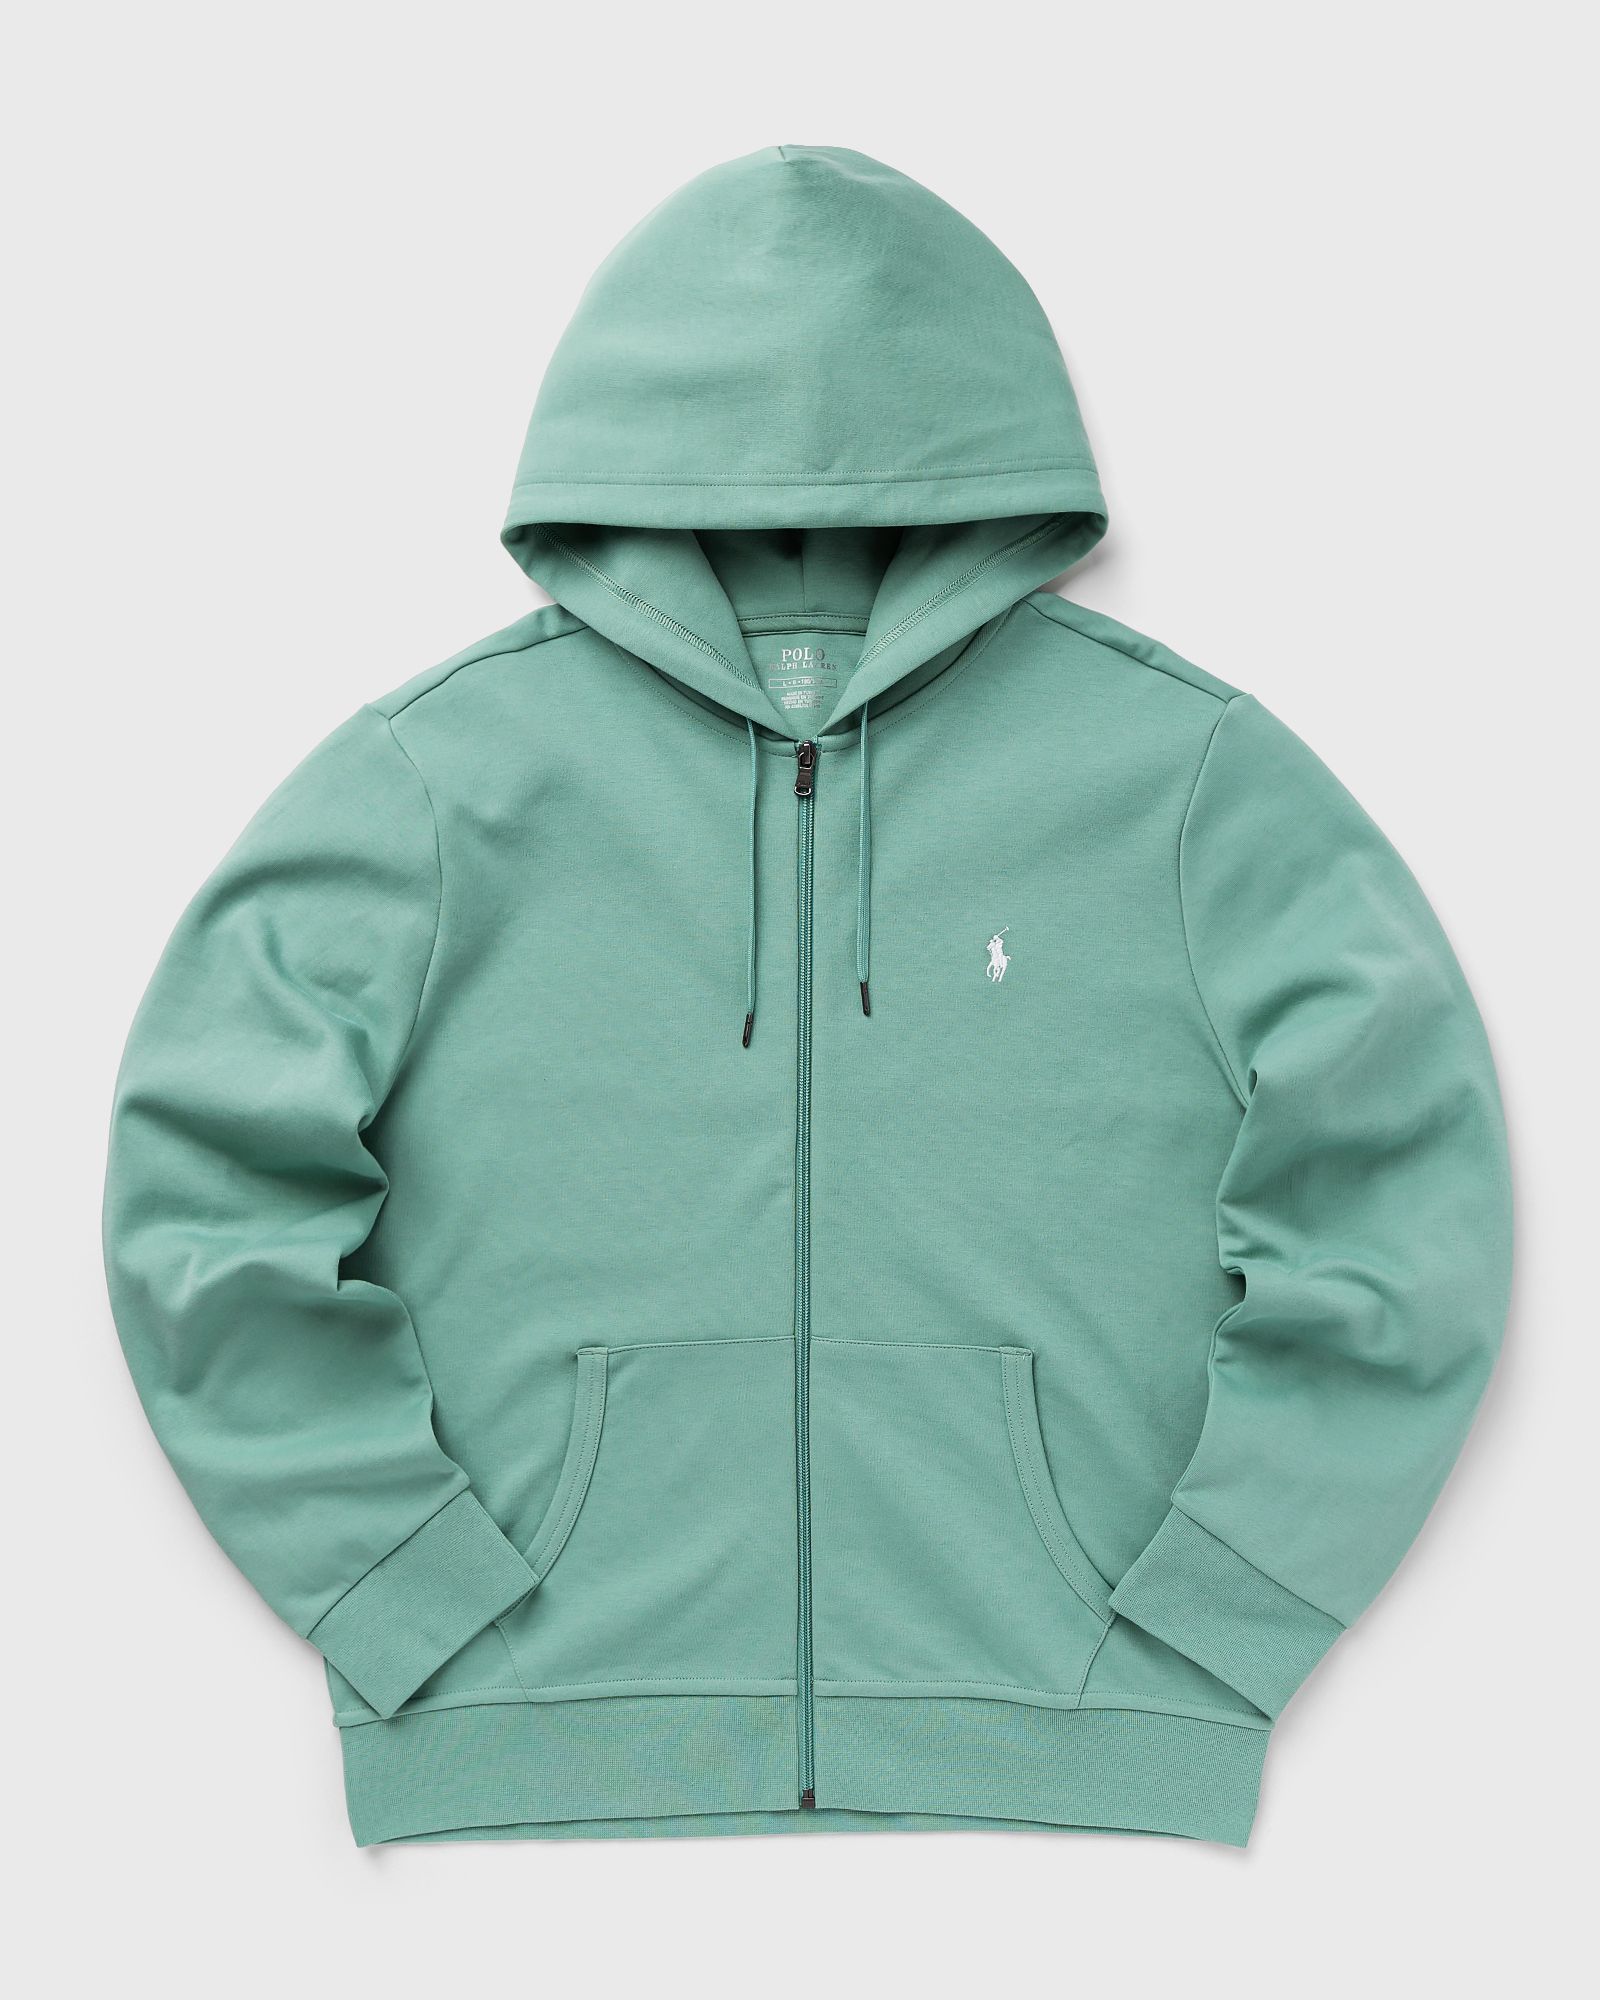 Polo Ralph Lauren - zippered hoodie men zippers green in größe:xl